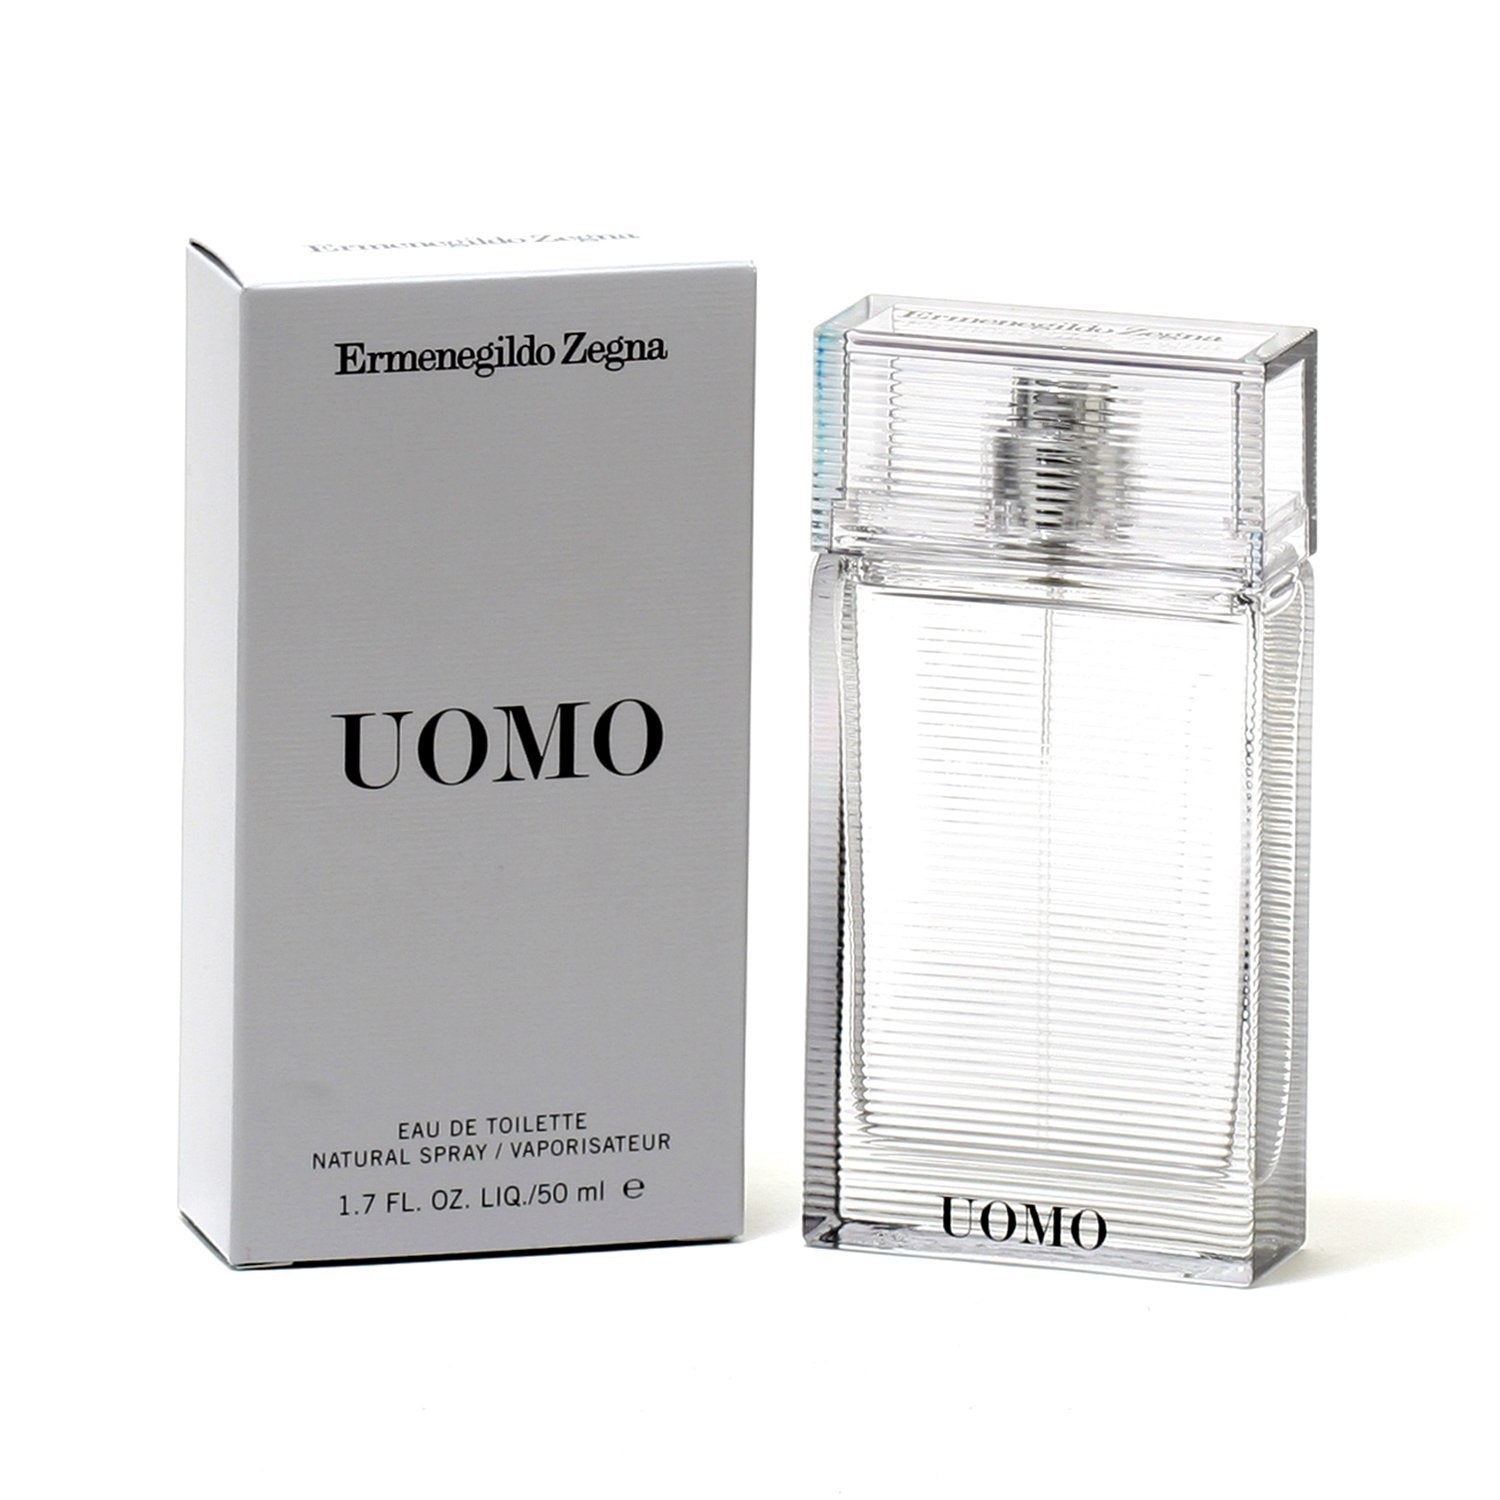 UOMO FOR MEN BY ERMENEGILDO ZEGNA - EAU DE TOILETTE SPRAY – Fragrance Room